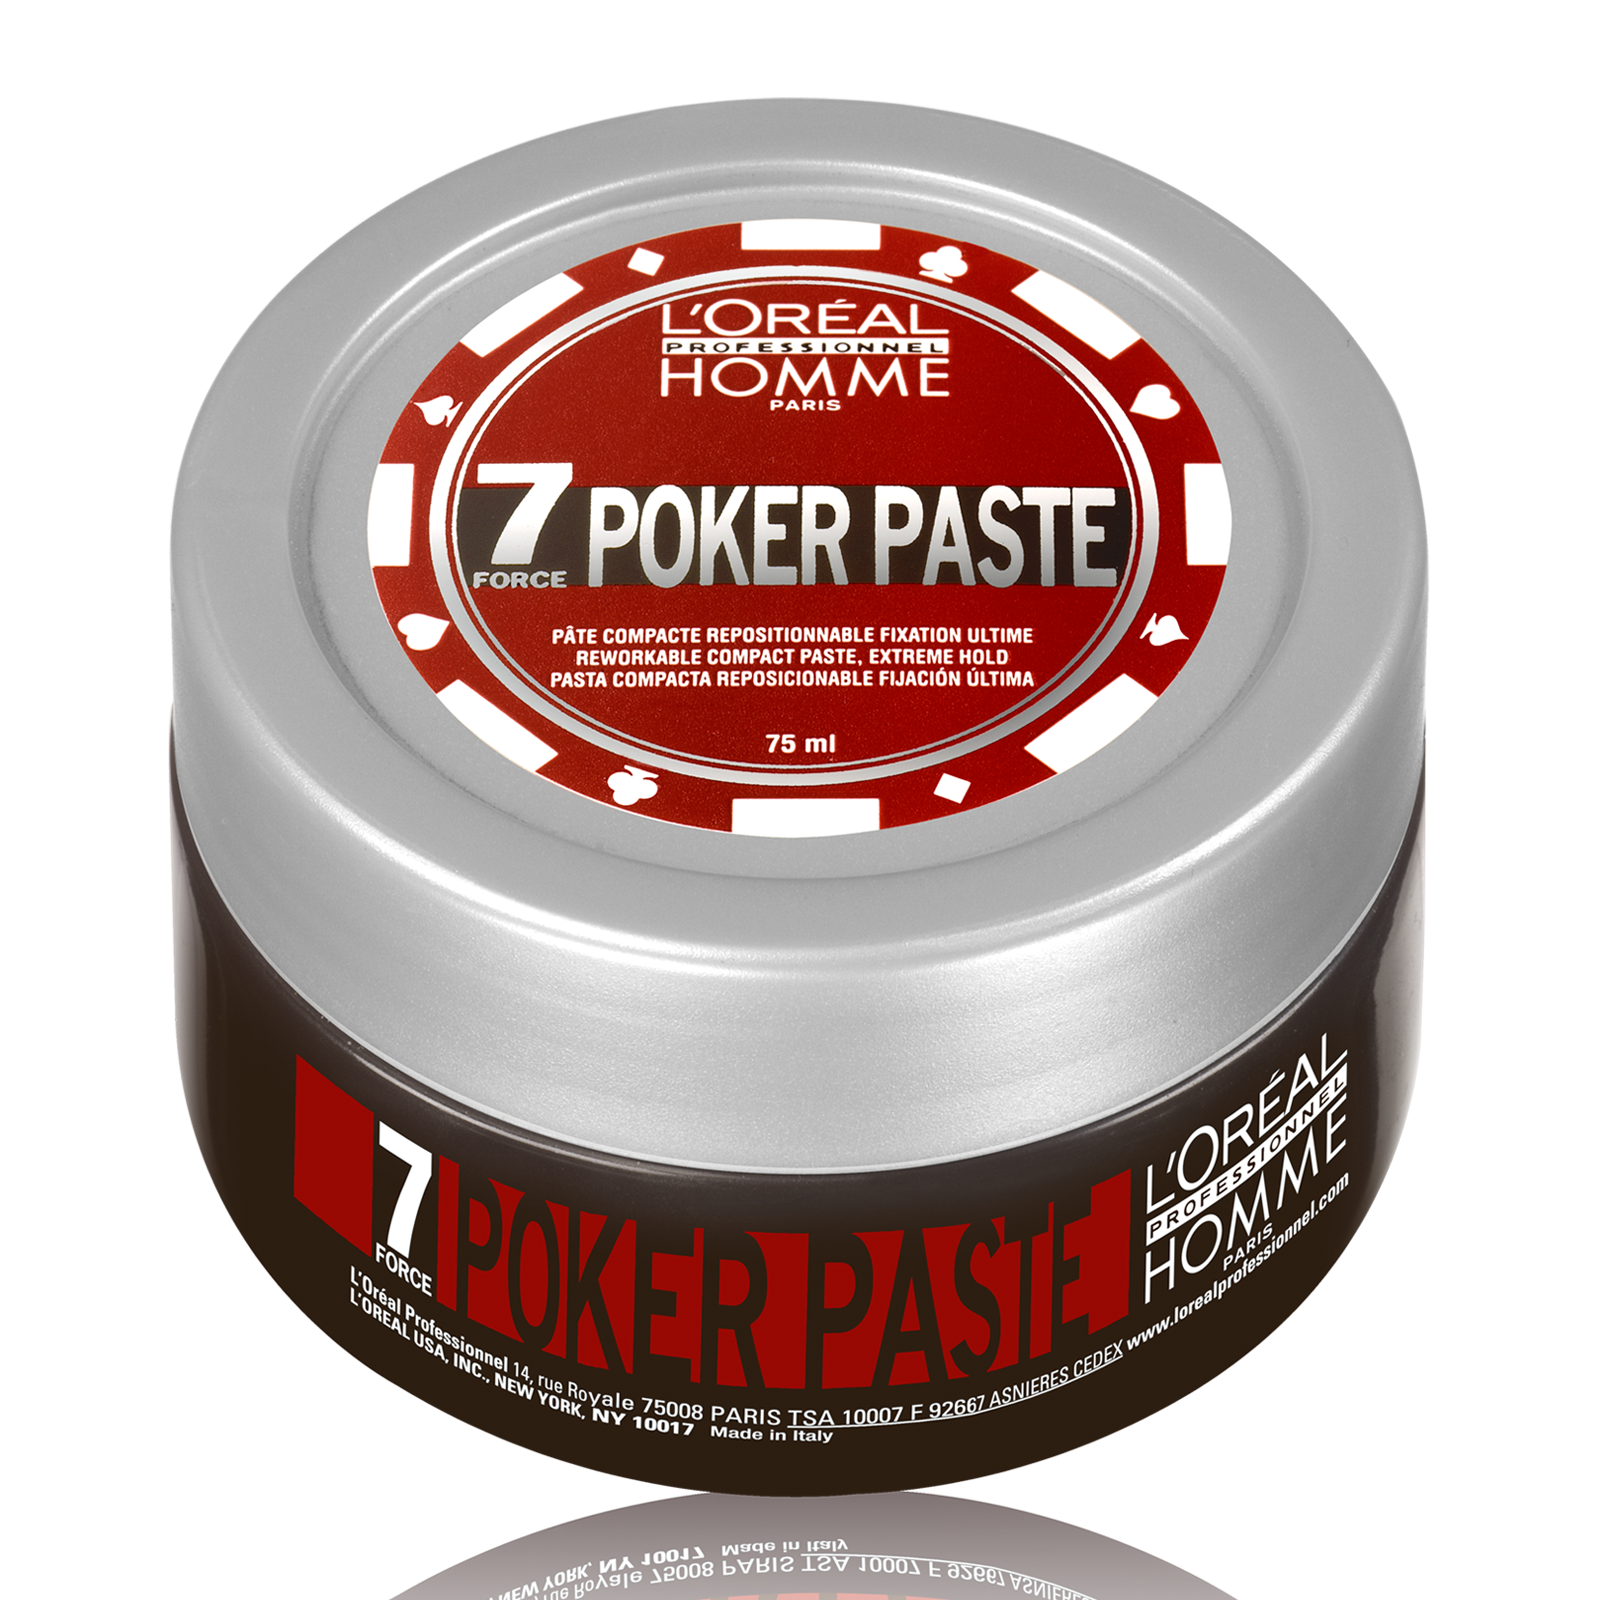 L'Oréal Professionnel Homme Poker Paste 75ml